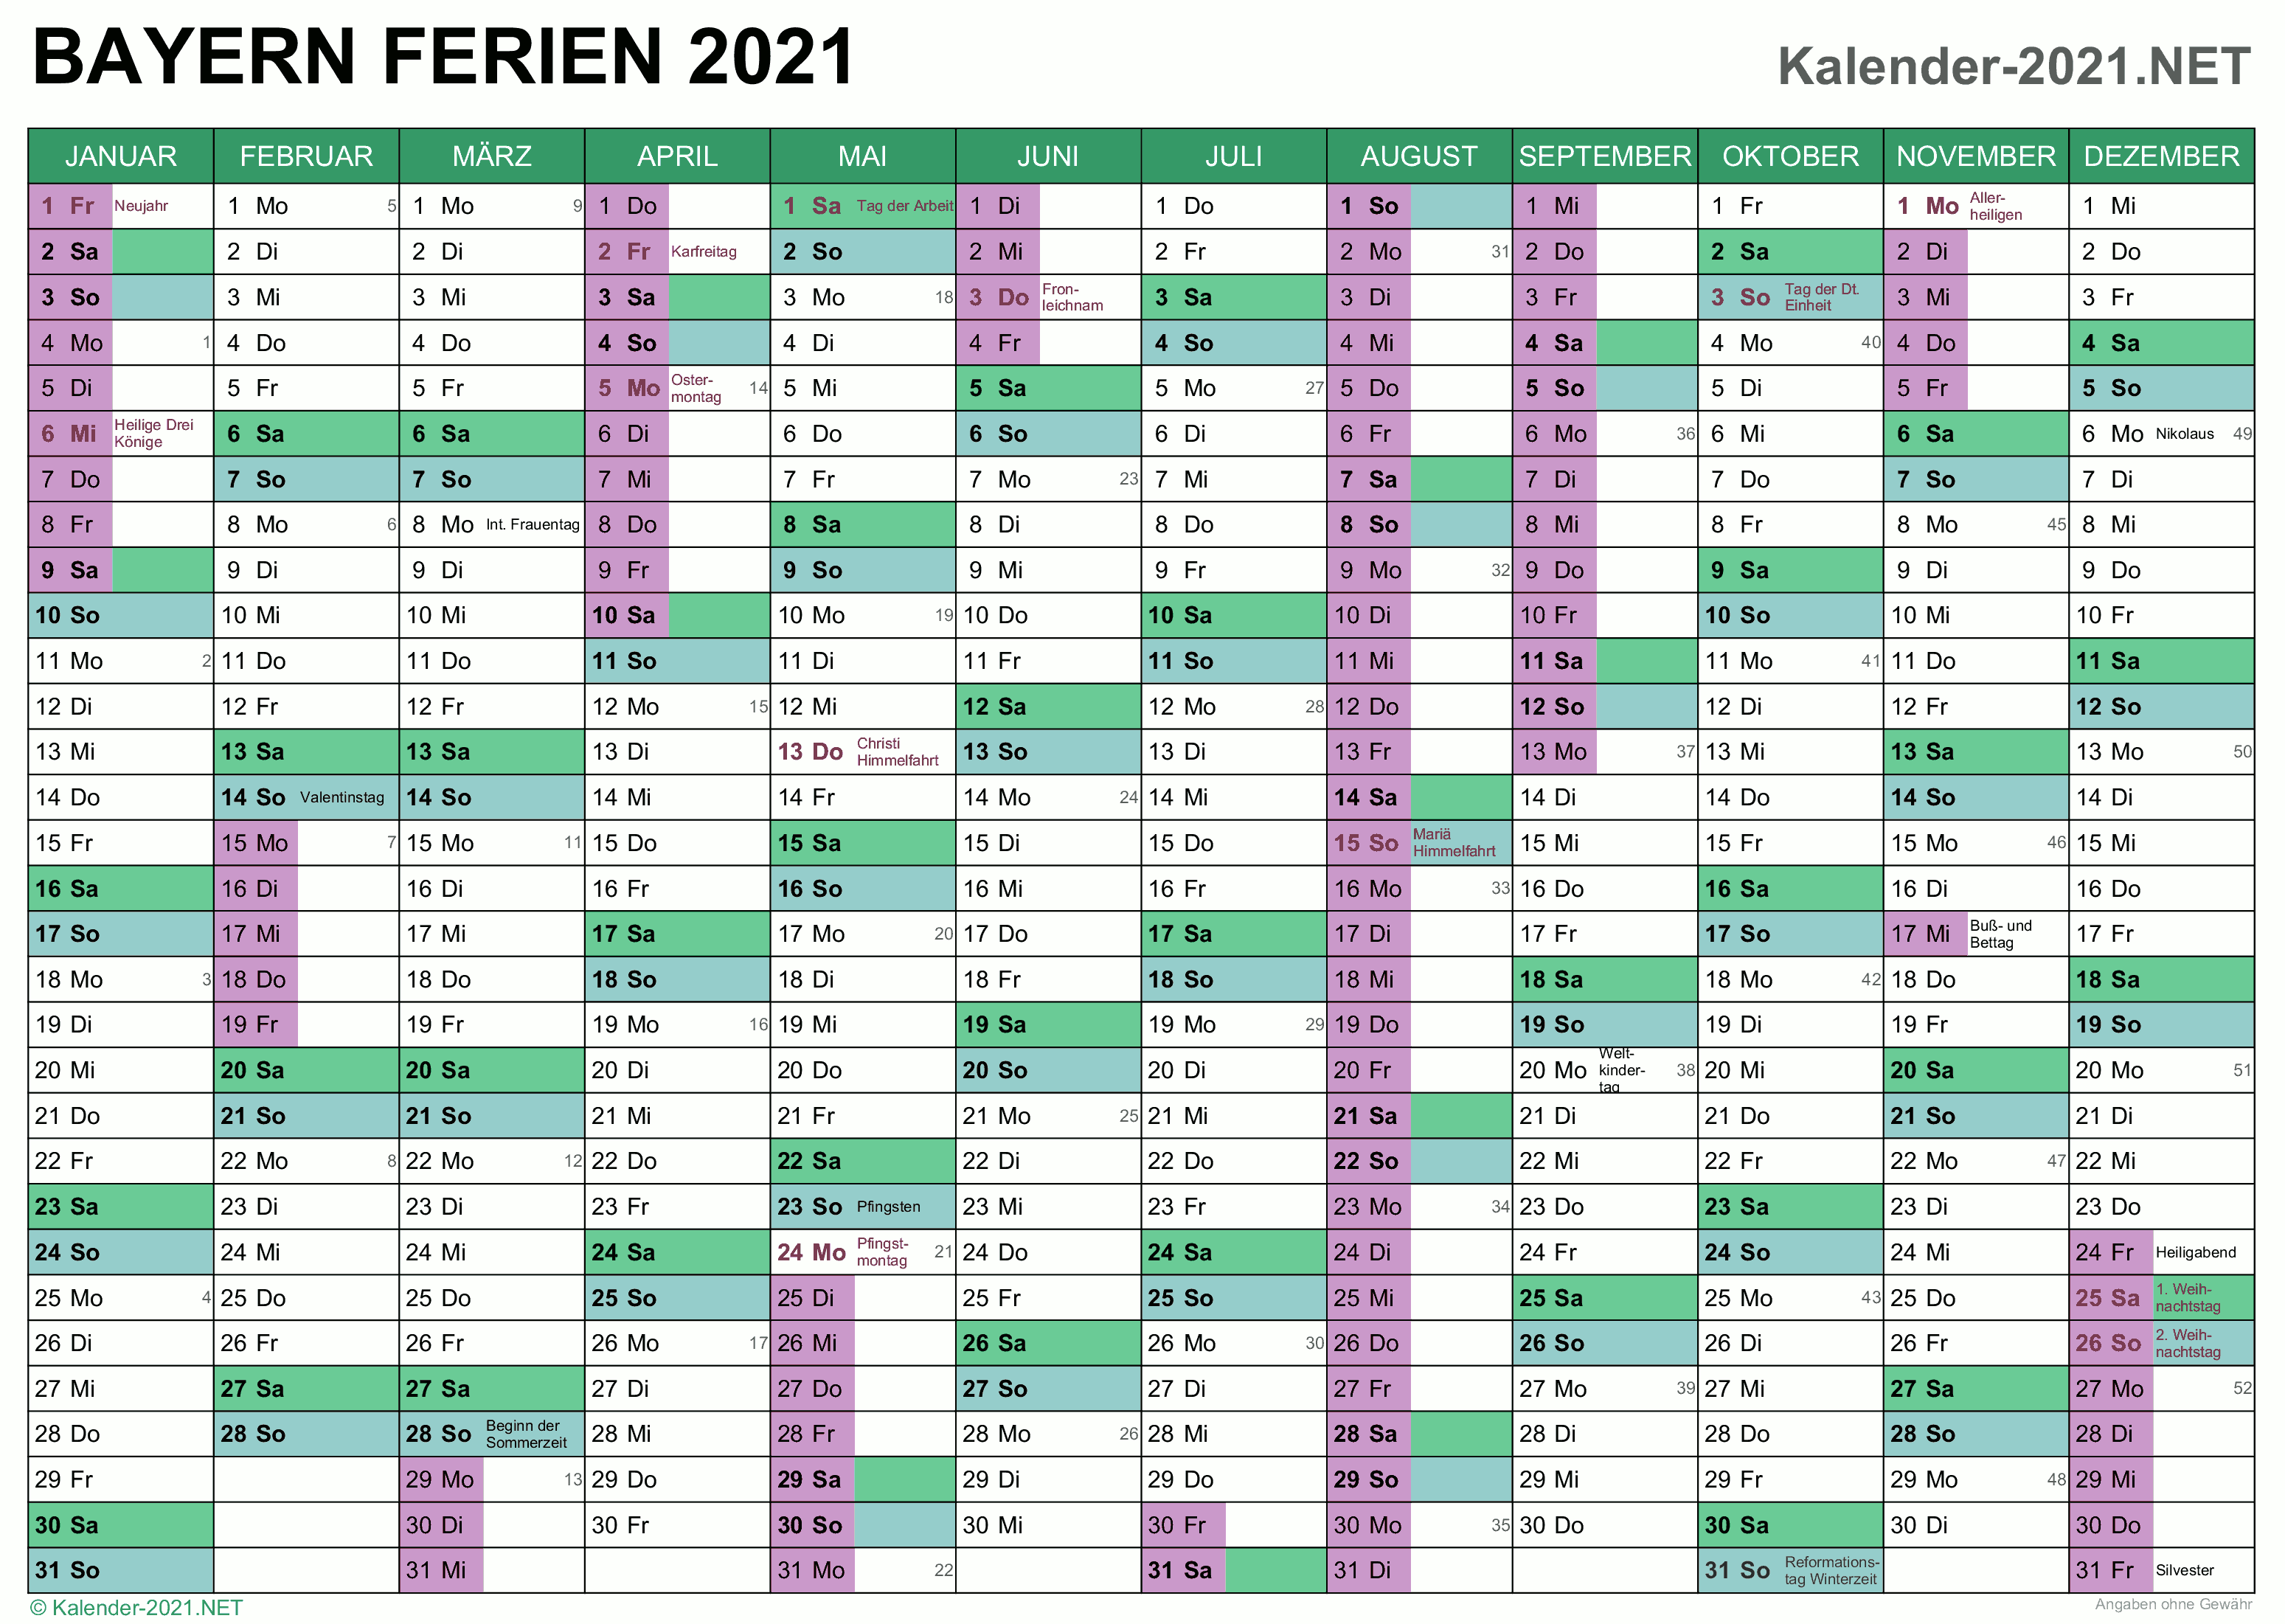 FERIEN Bayern 2021 - Ferienkalender & Übersicht